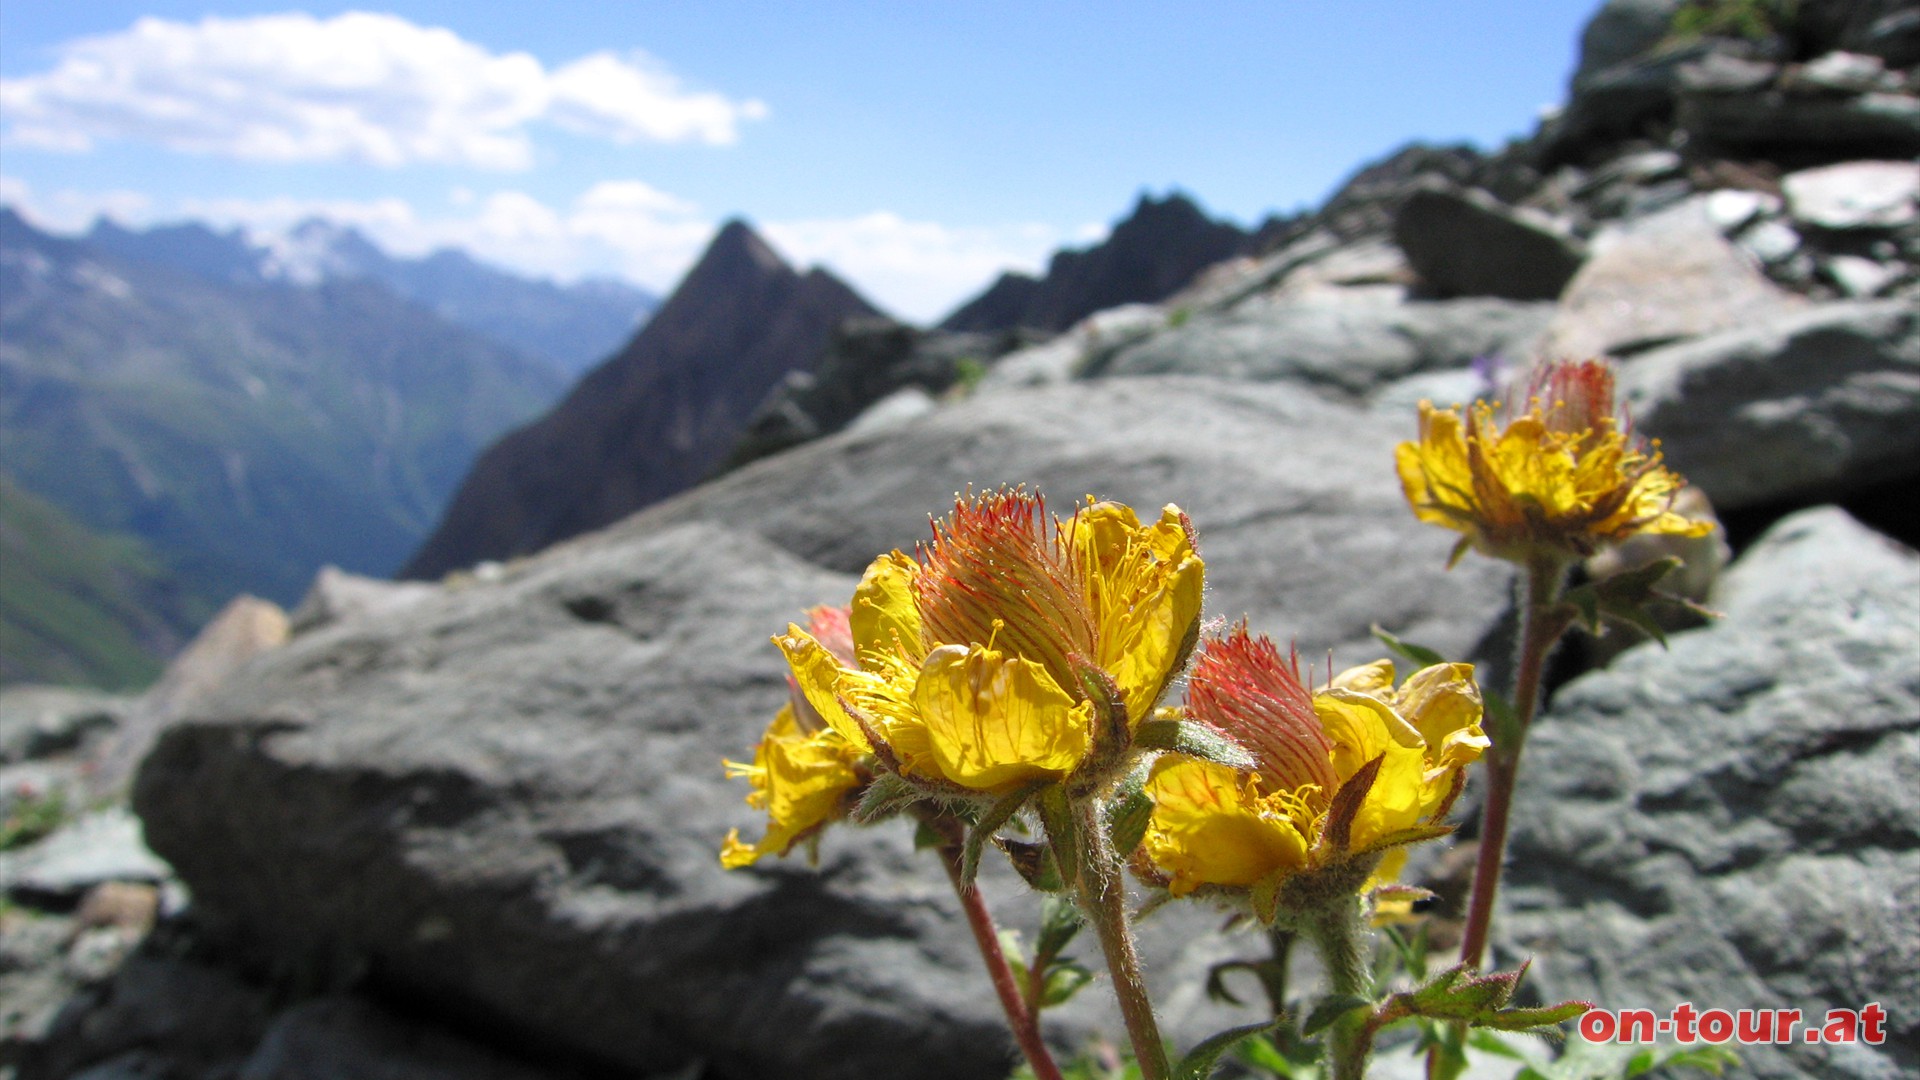 Prchtigen Alpenblumen. Im Hintergrund ragt die 
Freiwandspitze empor.